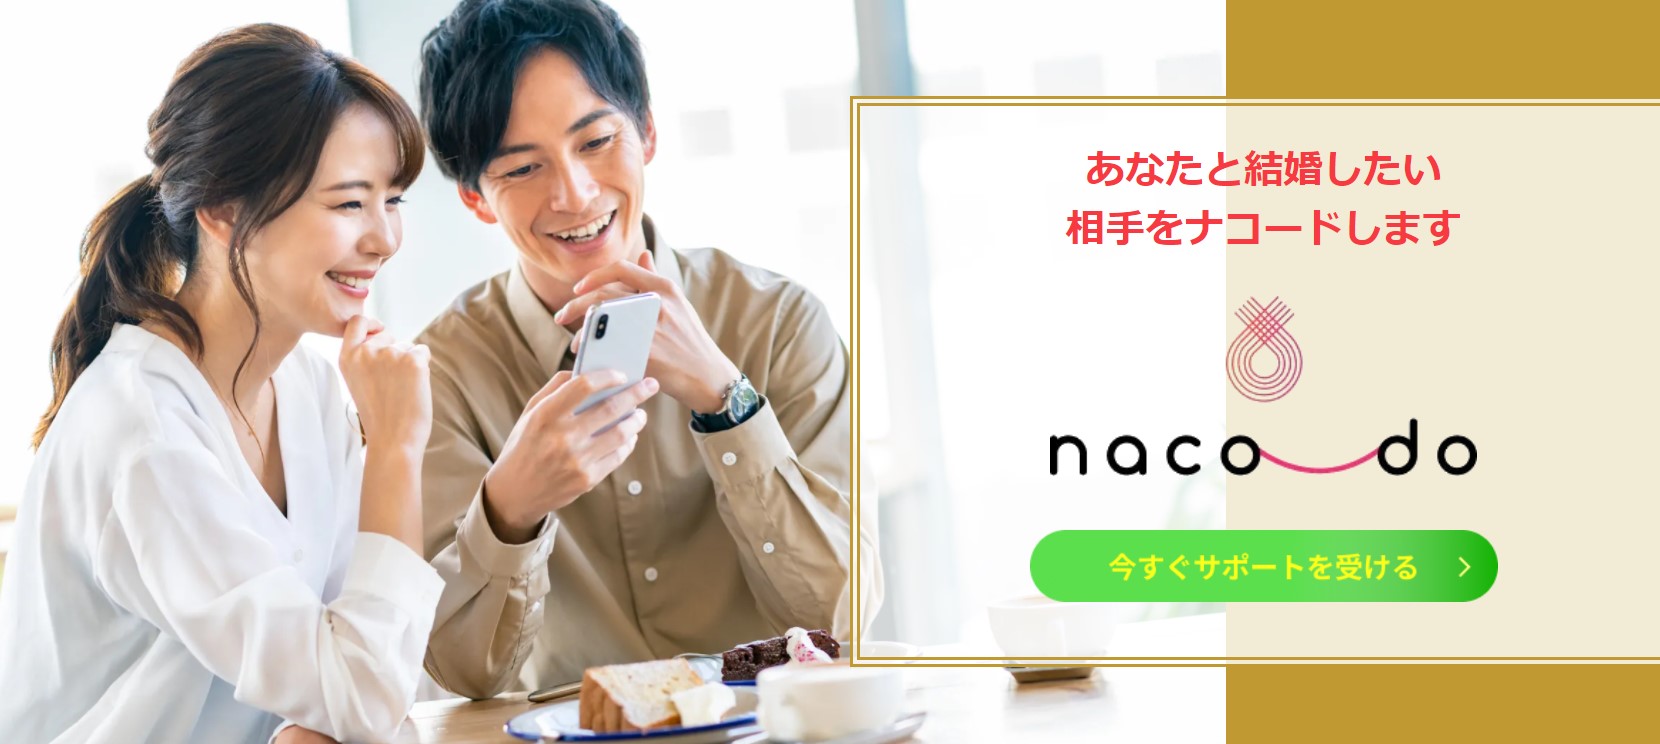 naco-do（ナコード）